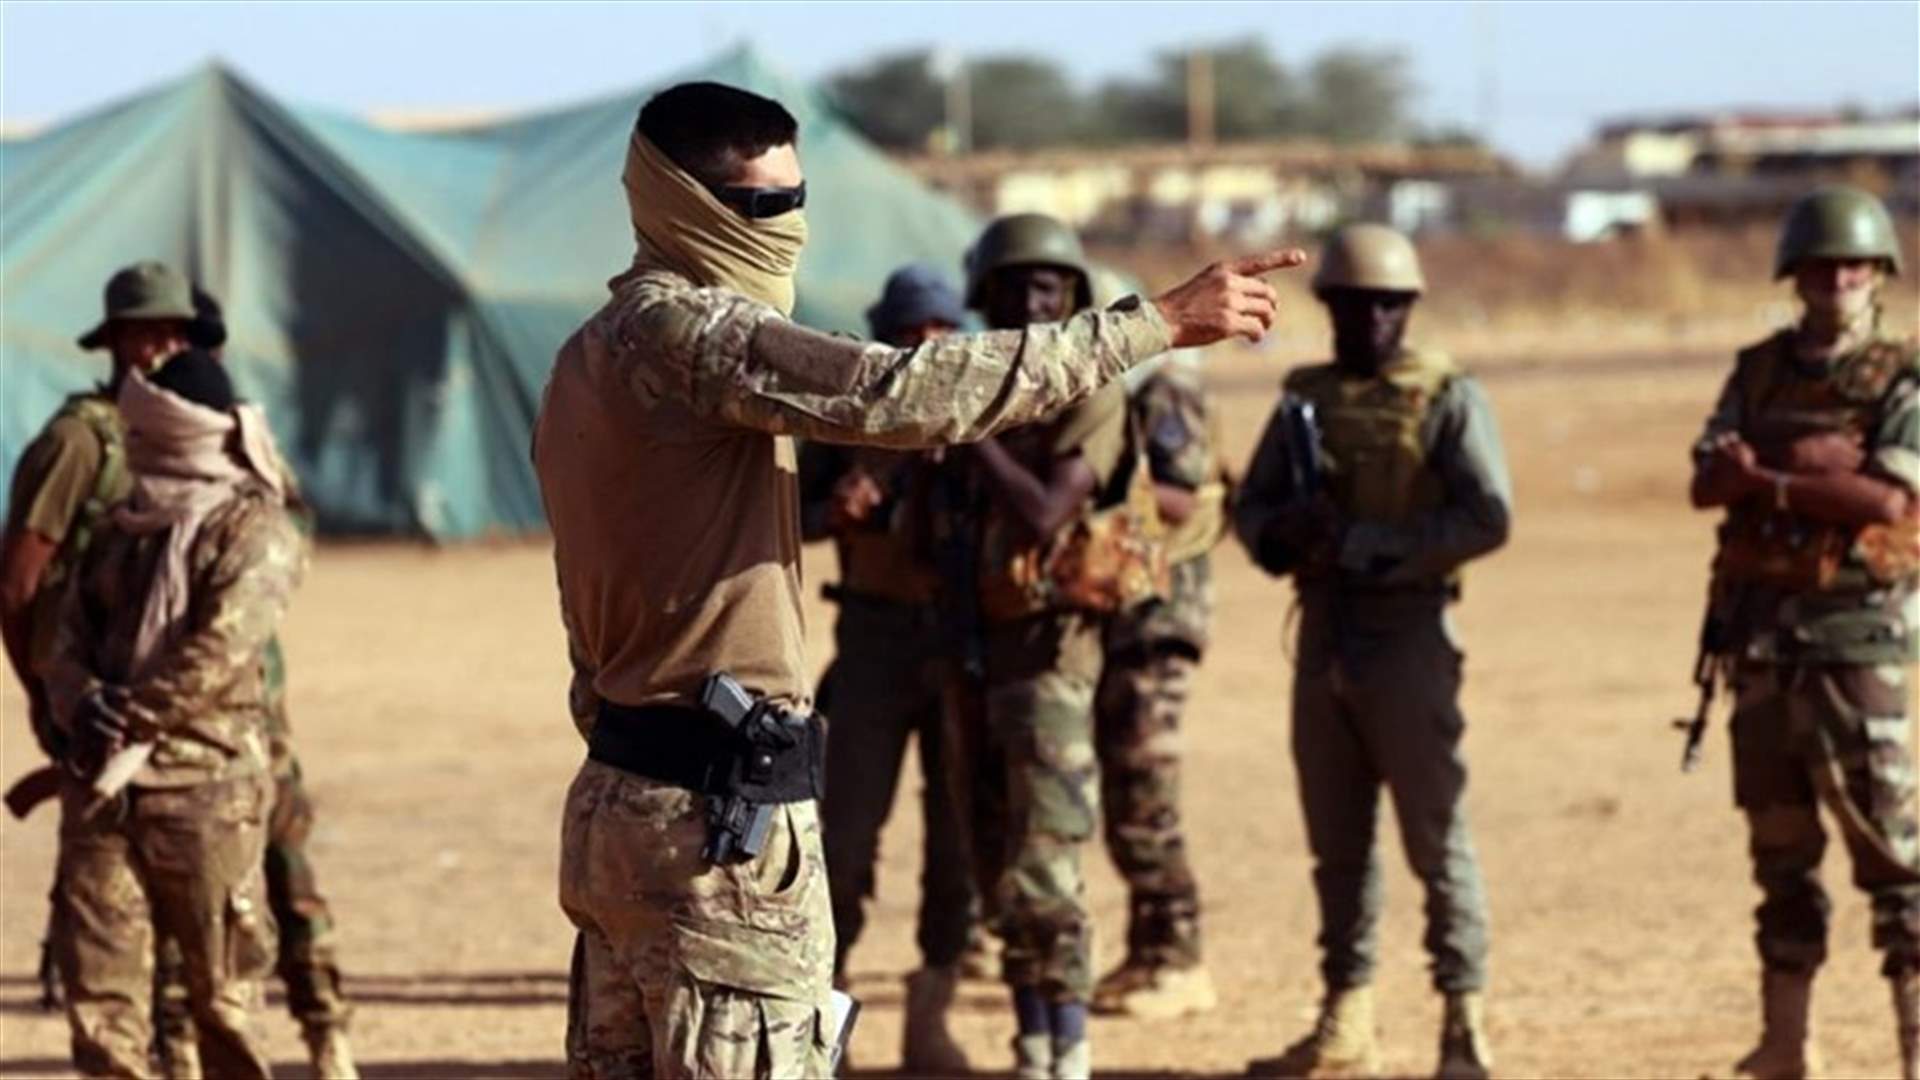 فرنسا تبقي ثلاثة آلاف عسكري في منطقة الساحل بعد انسحابها من مالي